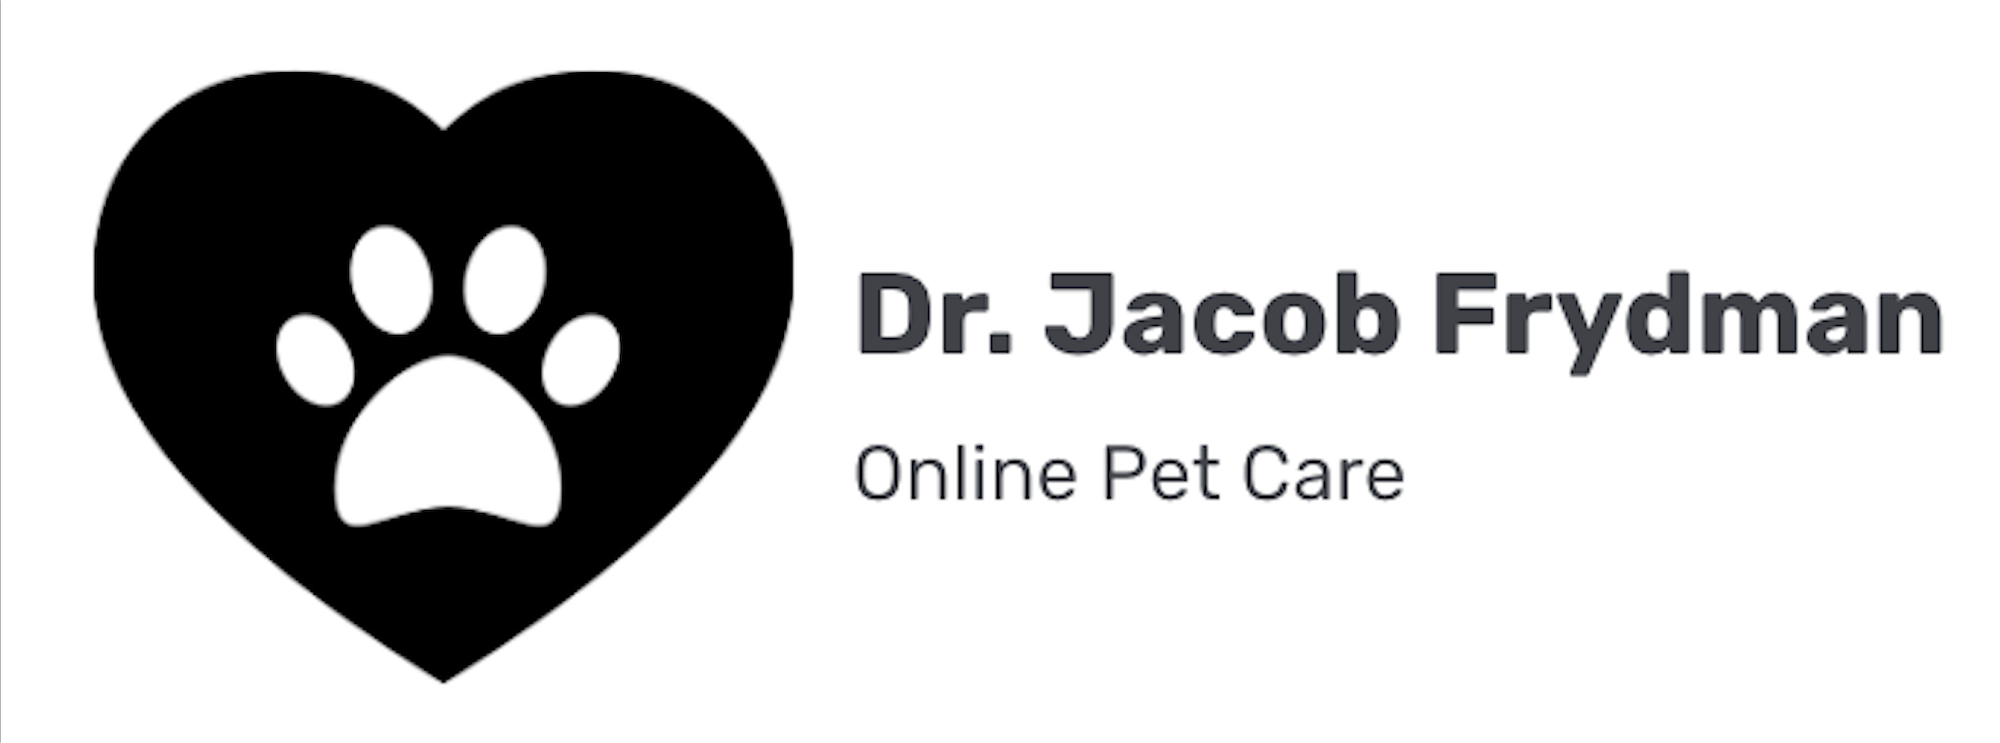 Dr. Jacob Frydman Online Pet Care